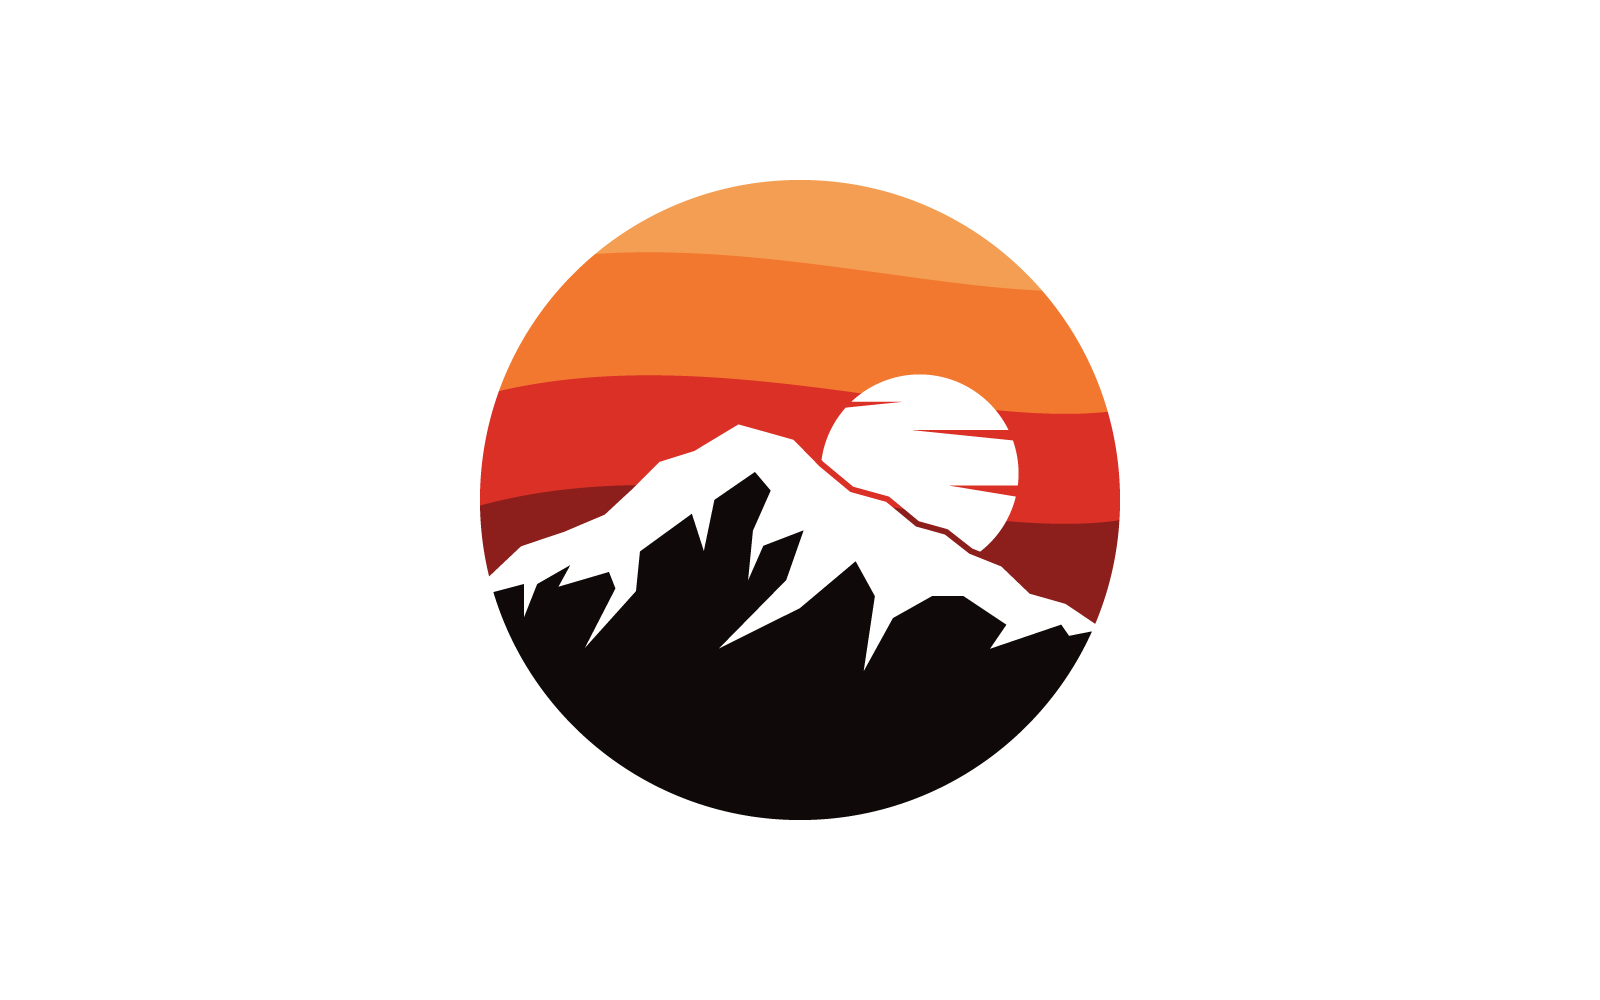 Mountain logo vector flat design